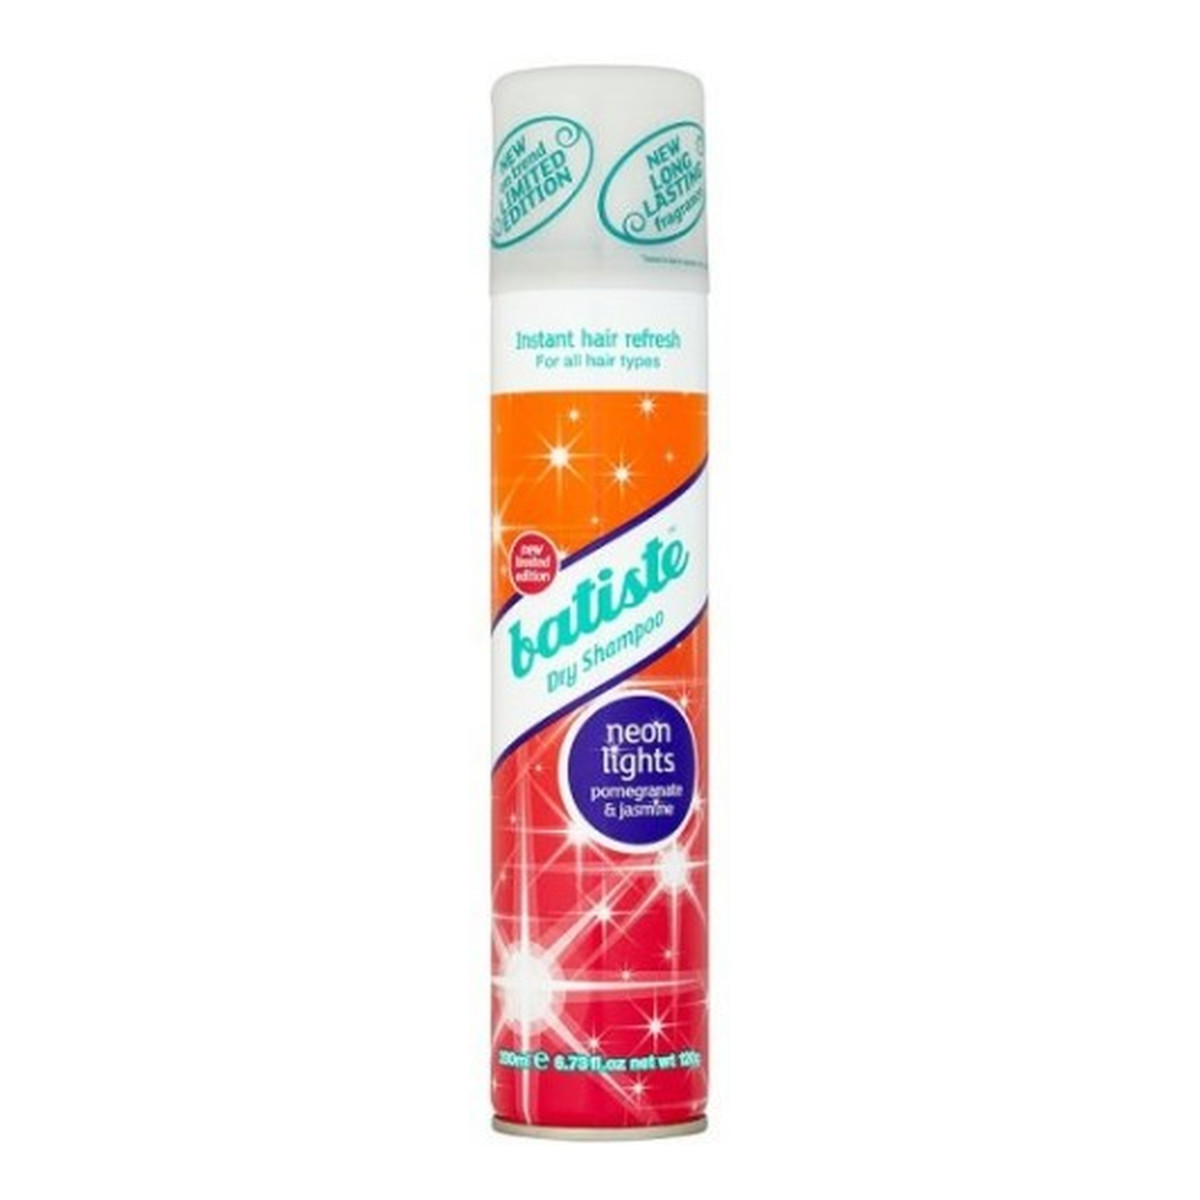 Batiste Dry Shampoo Neon Lights Pomegranate & Jasmine Suchy Szampon Do Włosów 200ml